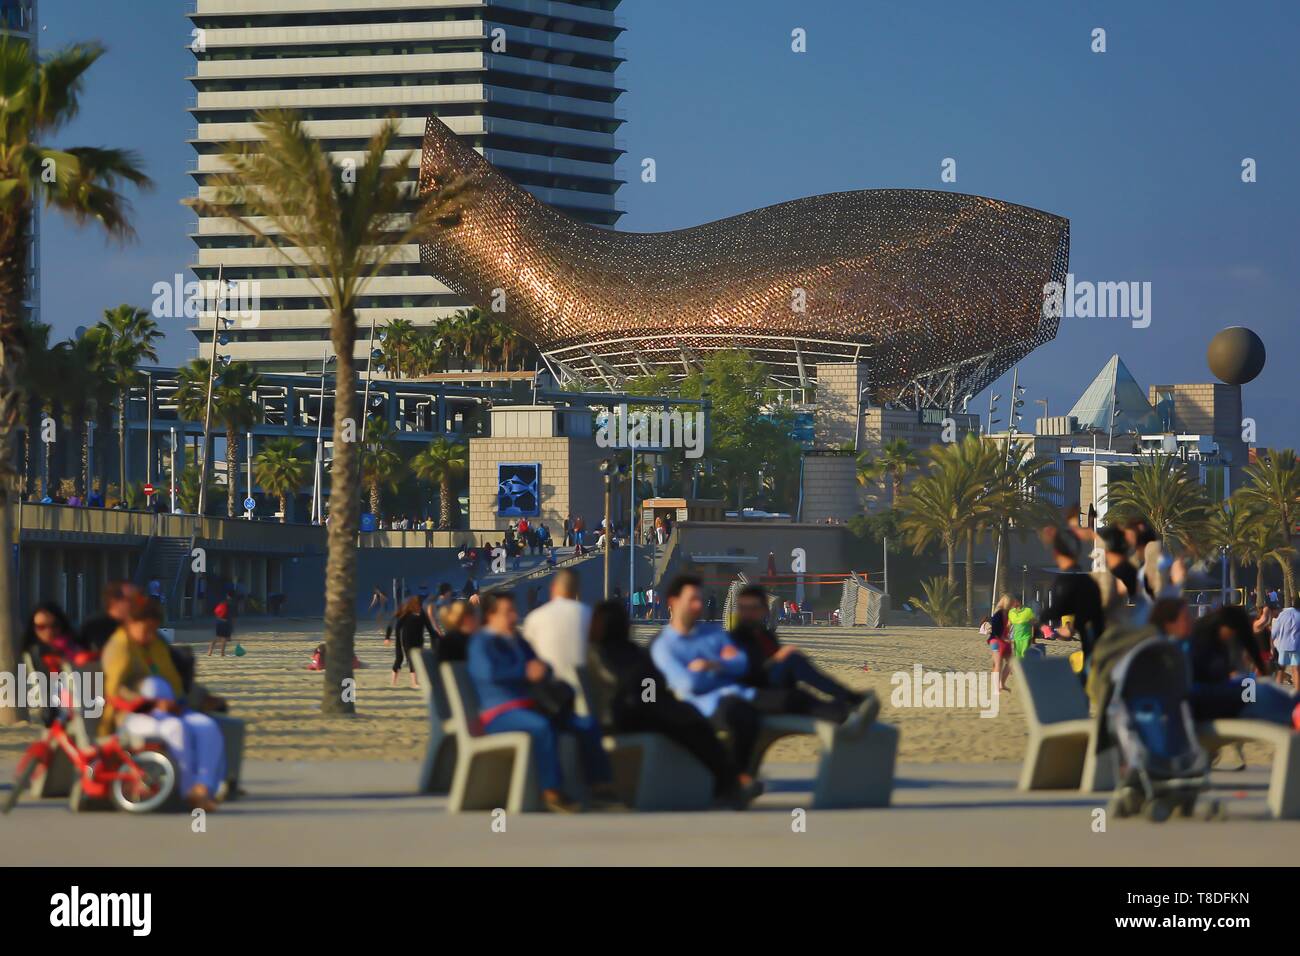 Espagne, Catalogne, Barcelone, &# x200b ;&# x200b;Peix ou Ballena (baleine) sculpture de l'American-Canadian l'architecte Frank Owen Gehry vu de la promenade Banque D'Images